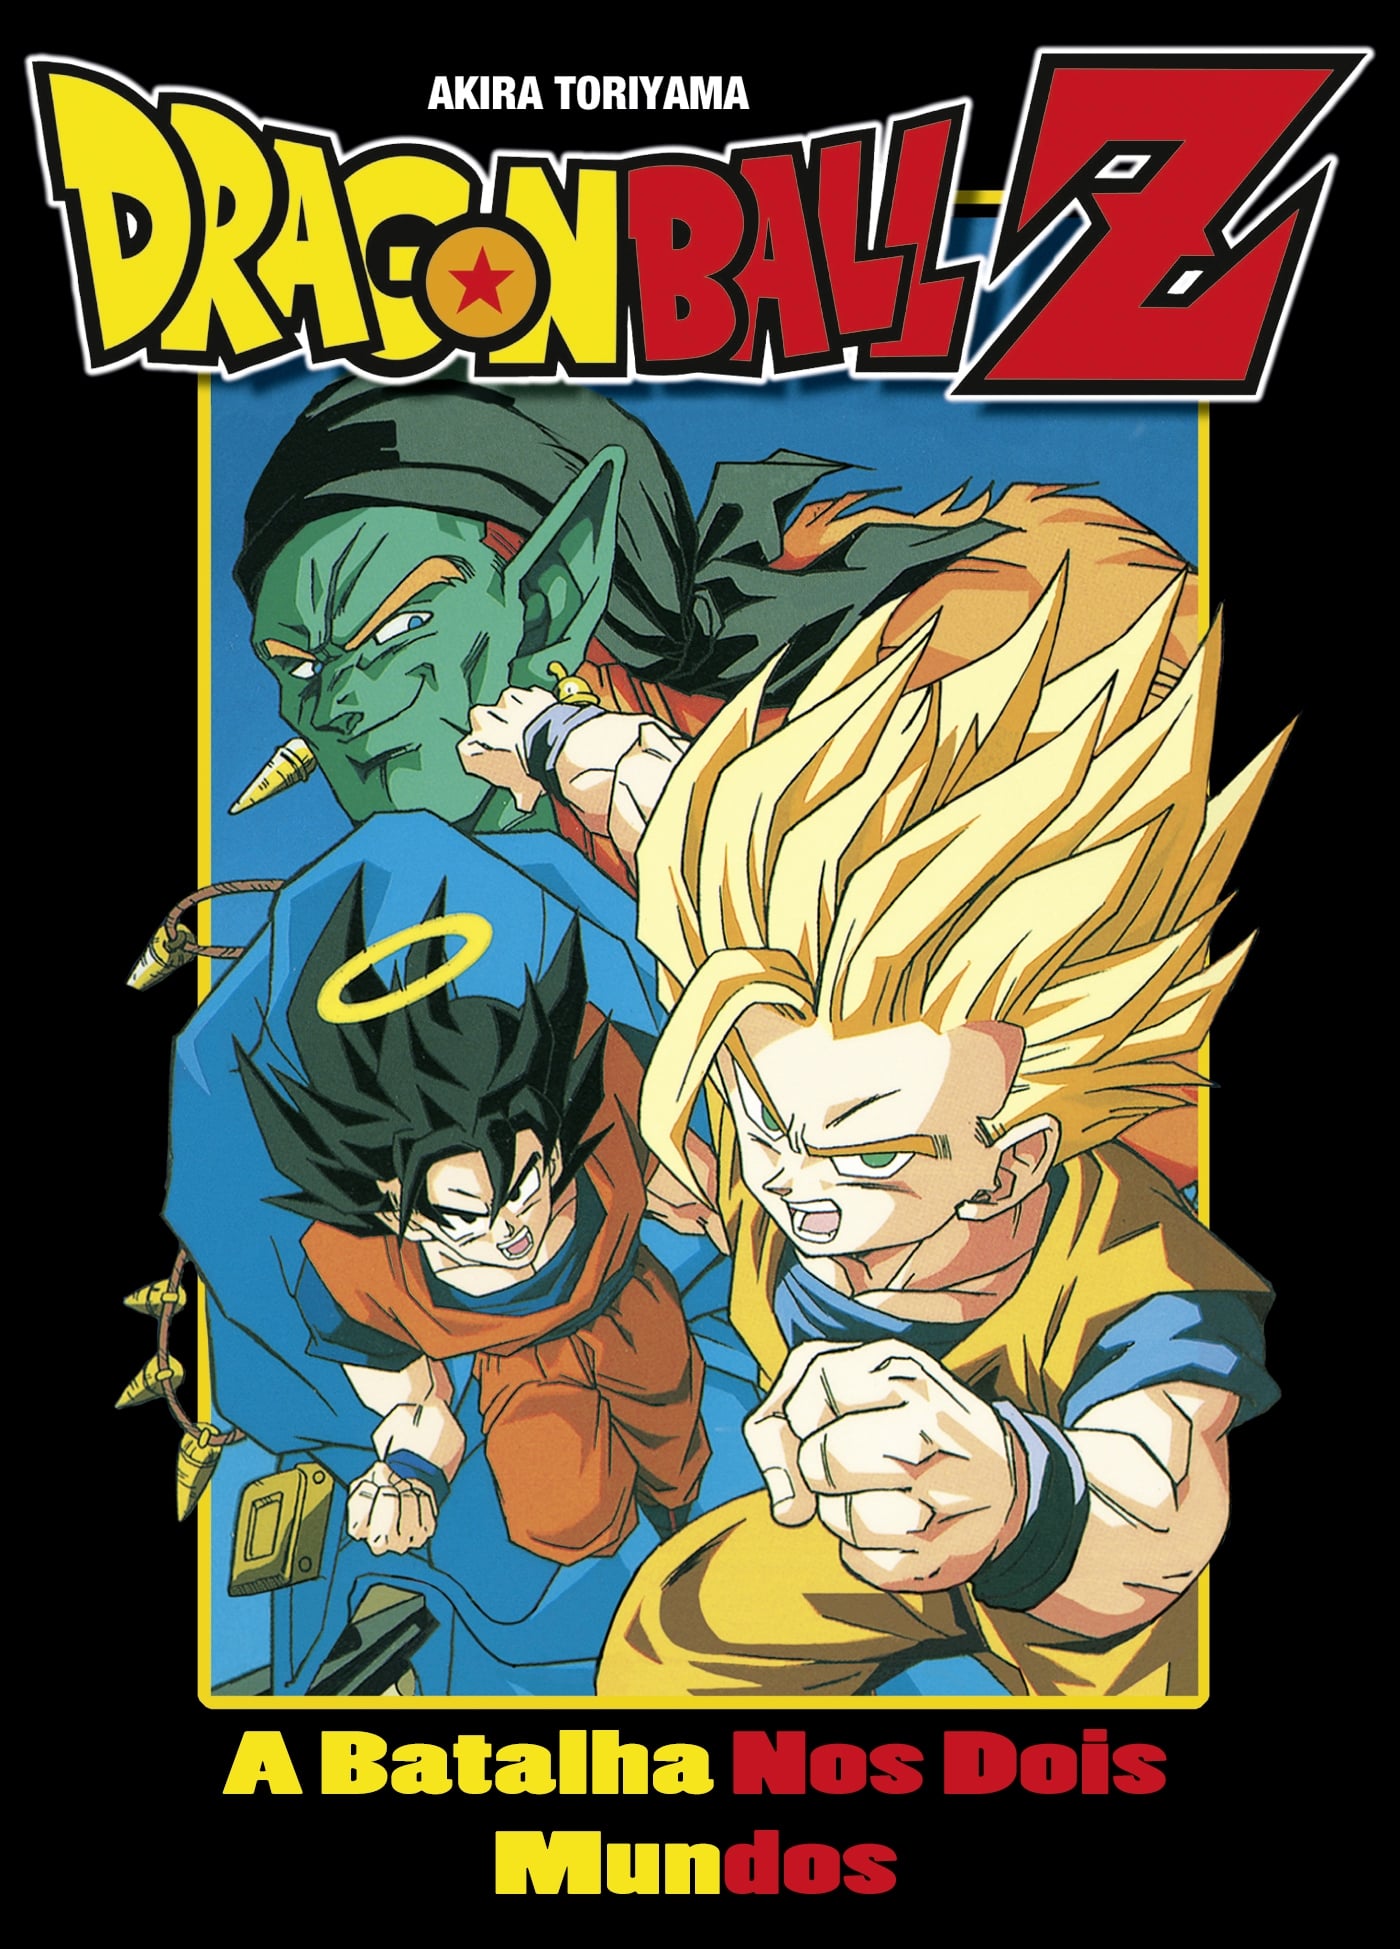 Rap Dos Androides (Dragon Ball Z) - Rap Grupo #2